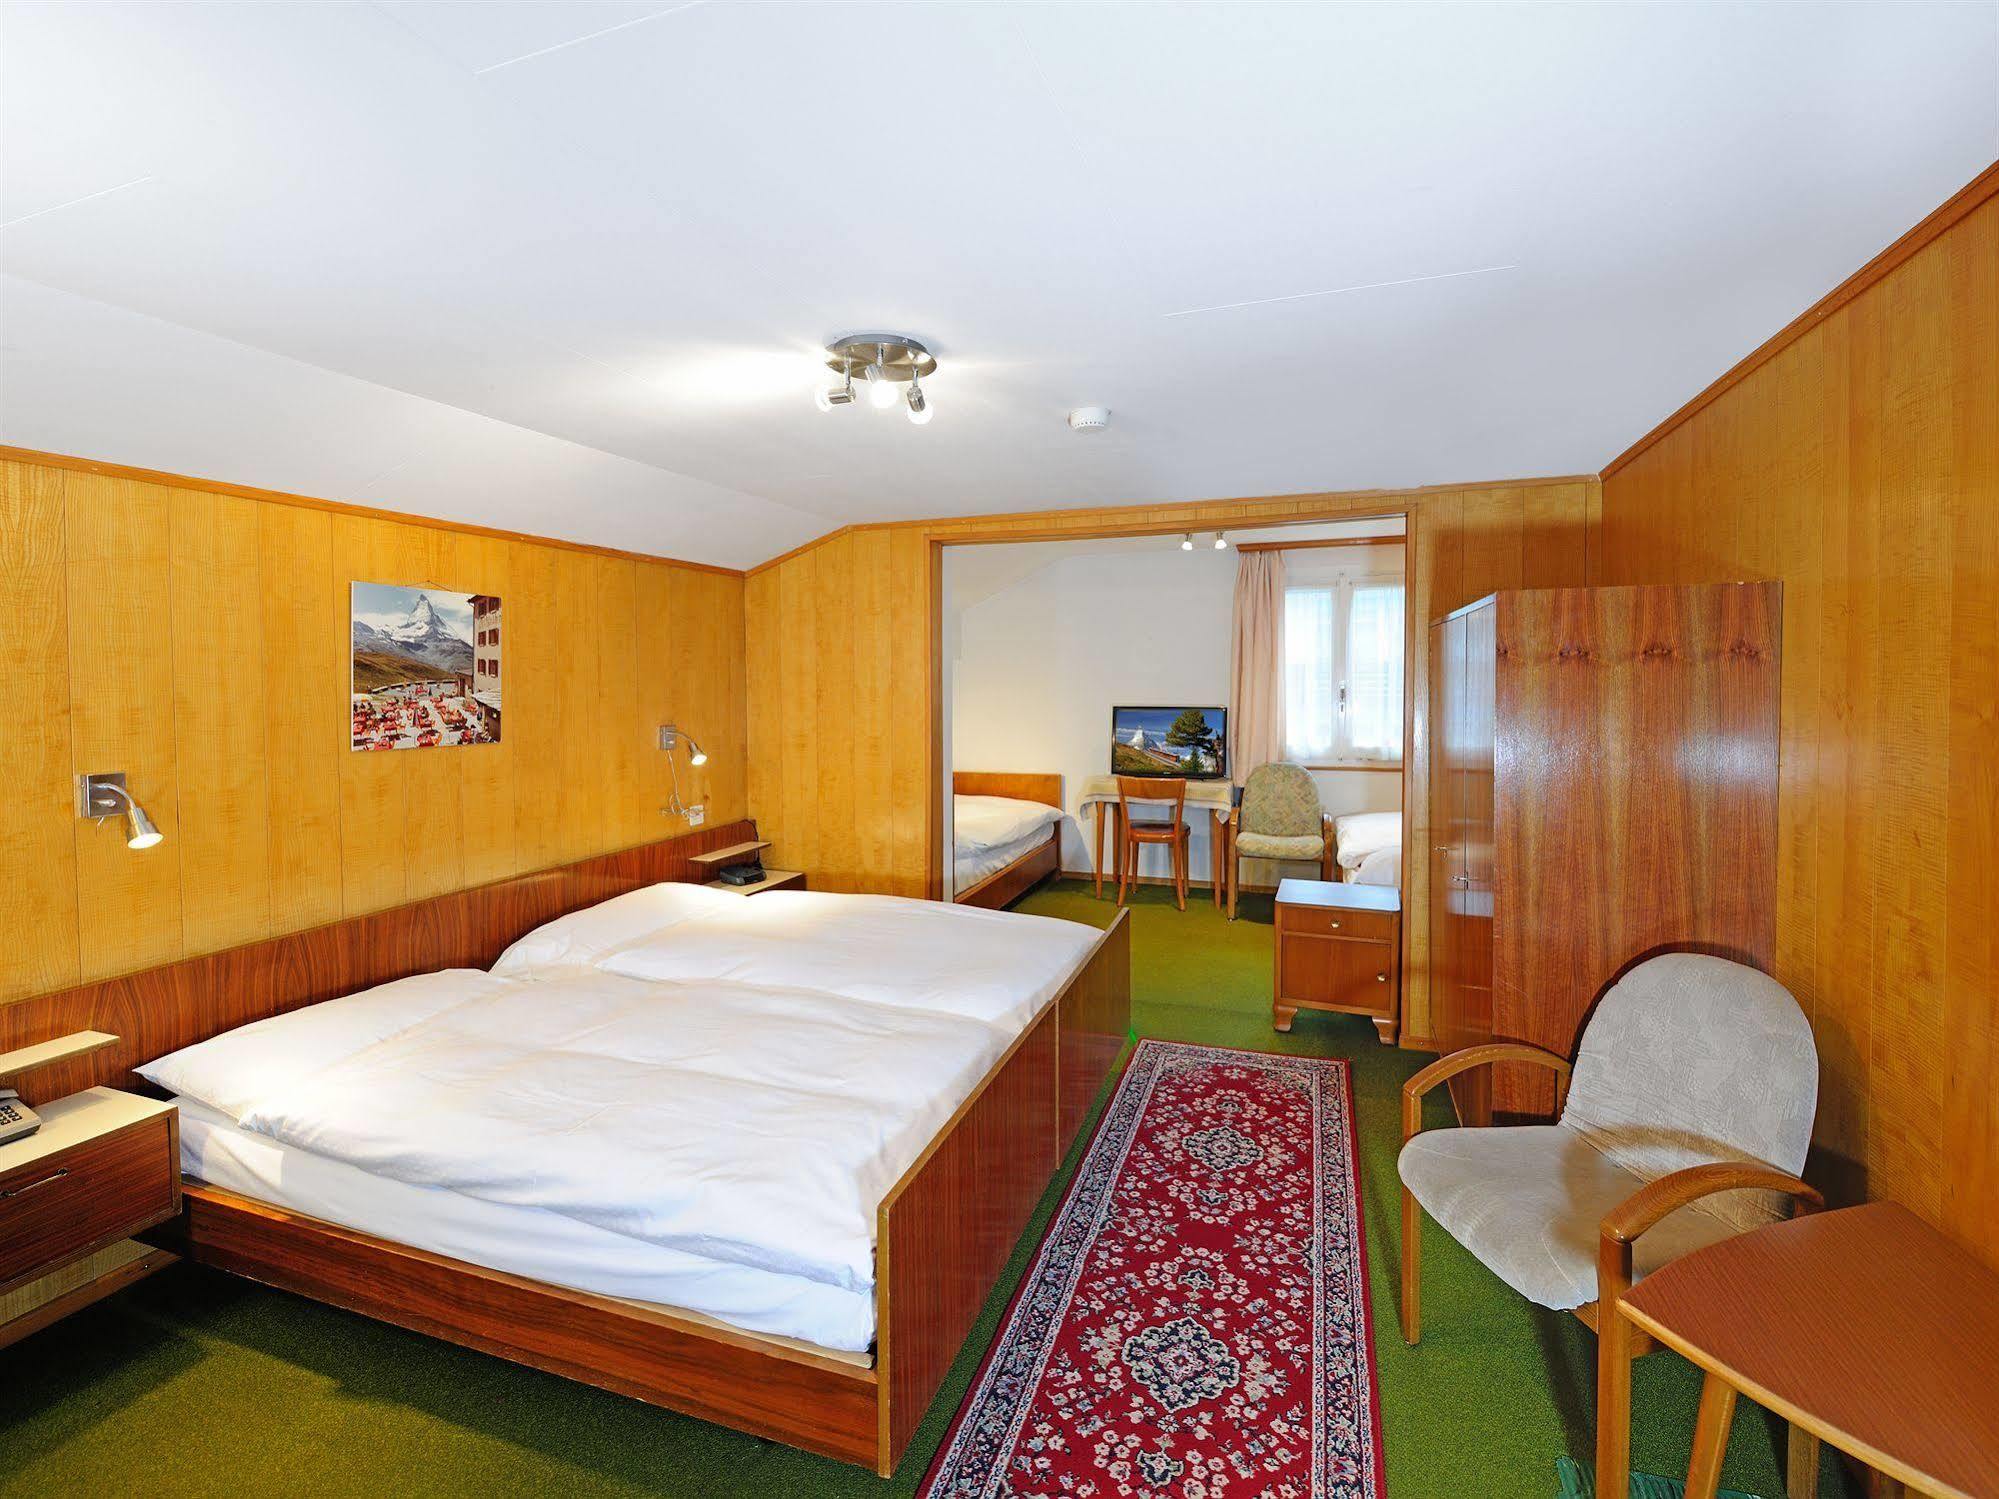 Hotel Alphubel Zermatt Dış mekan fotoğraf